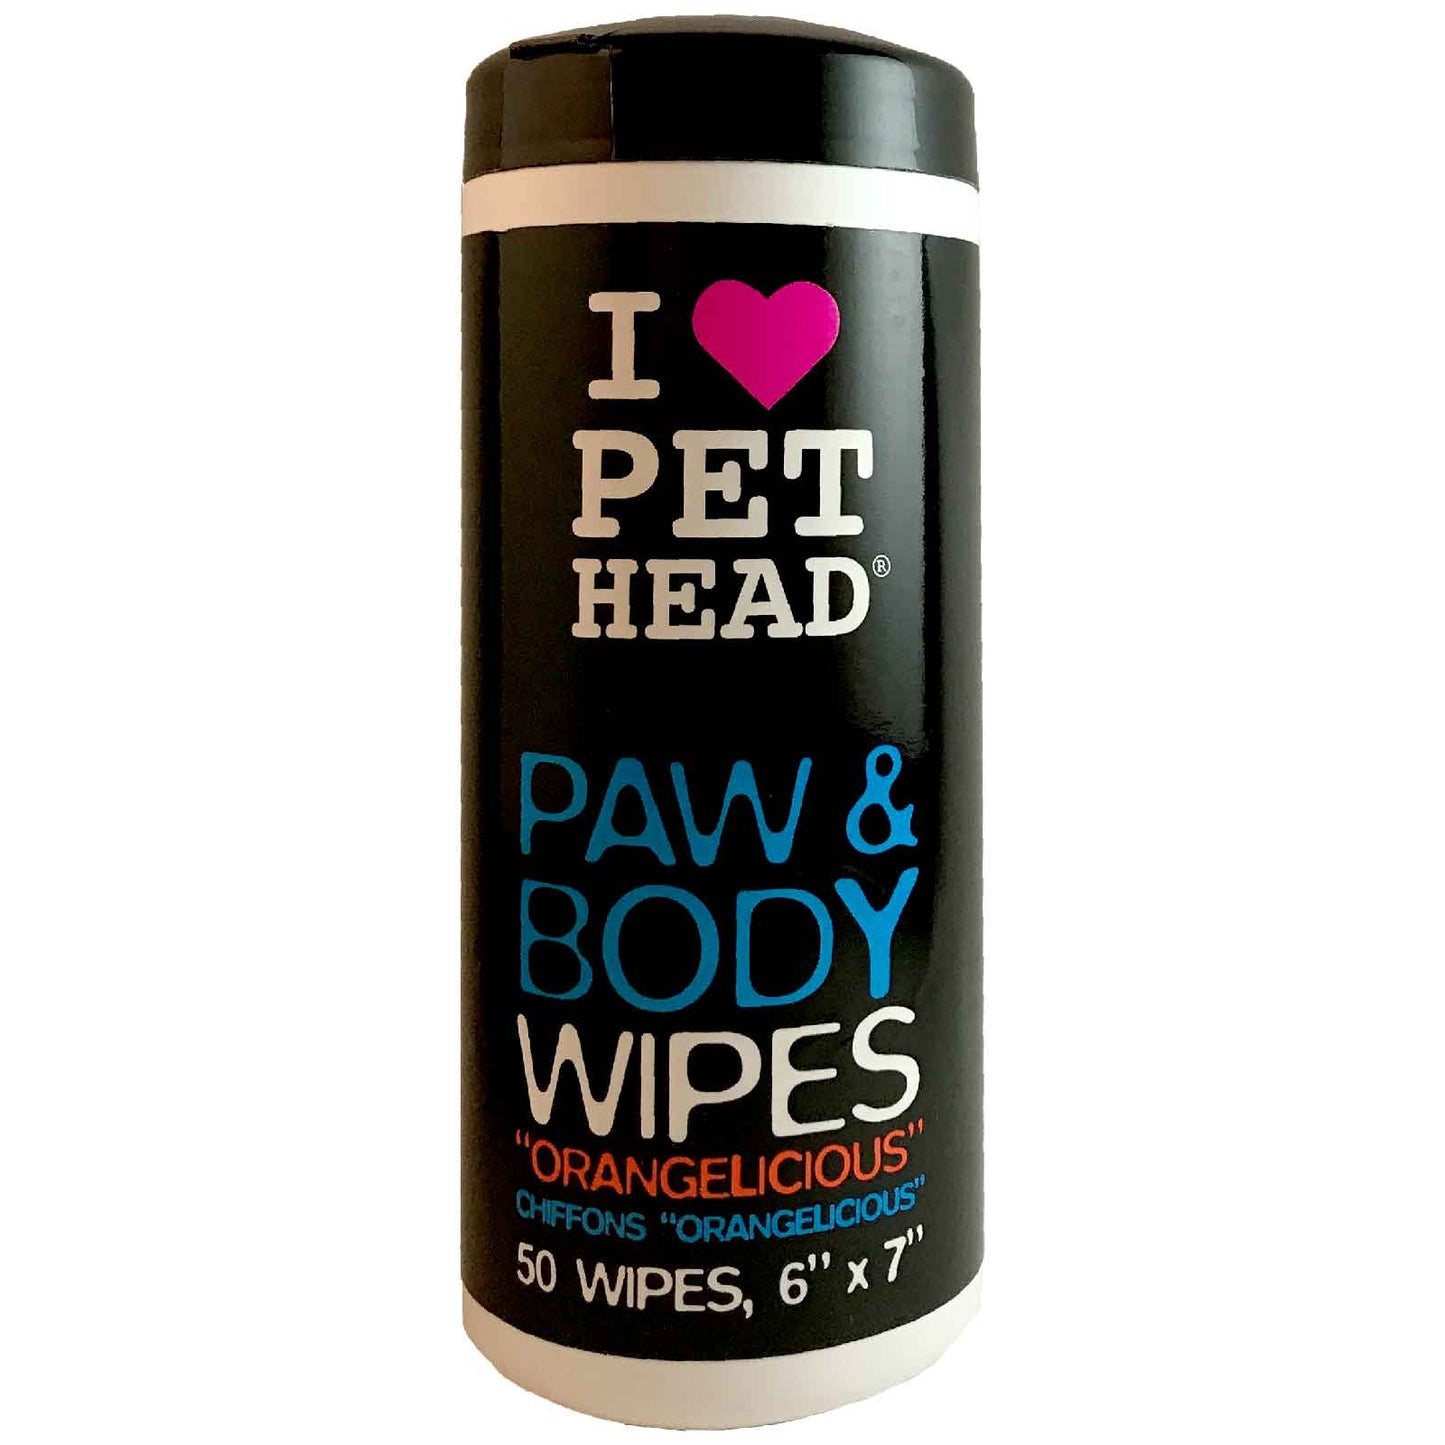 Pet Head Paw & Body Wipes